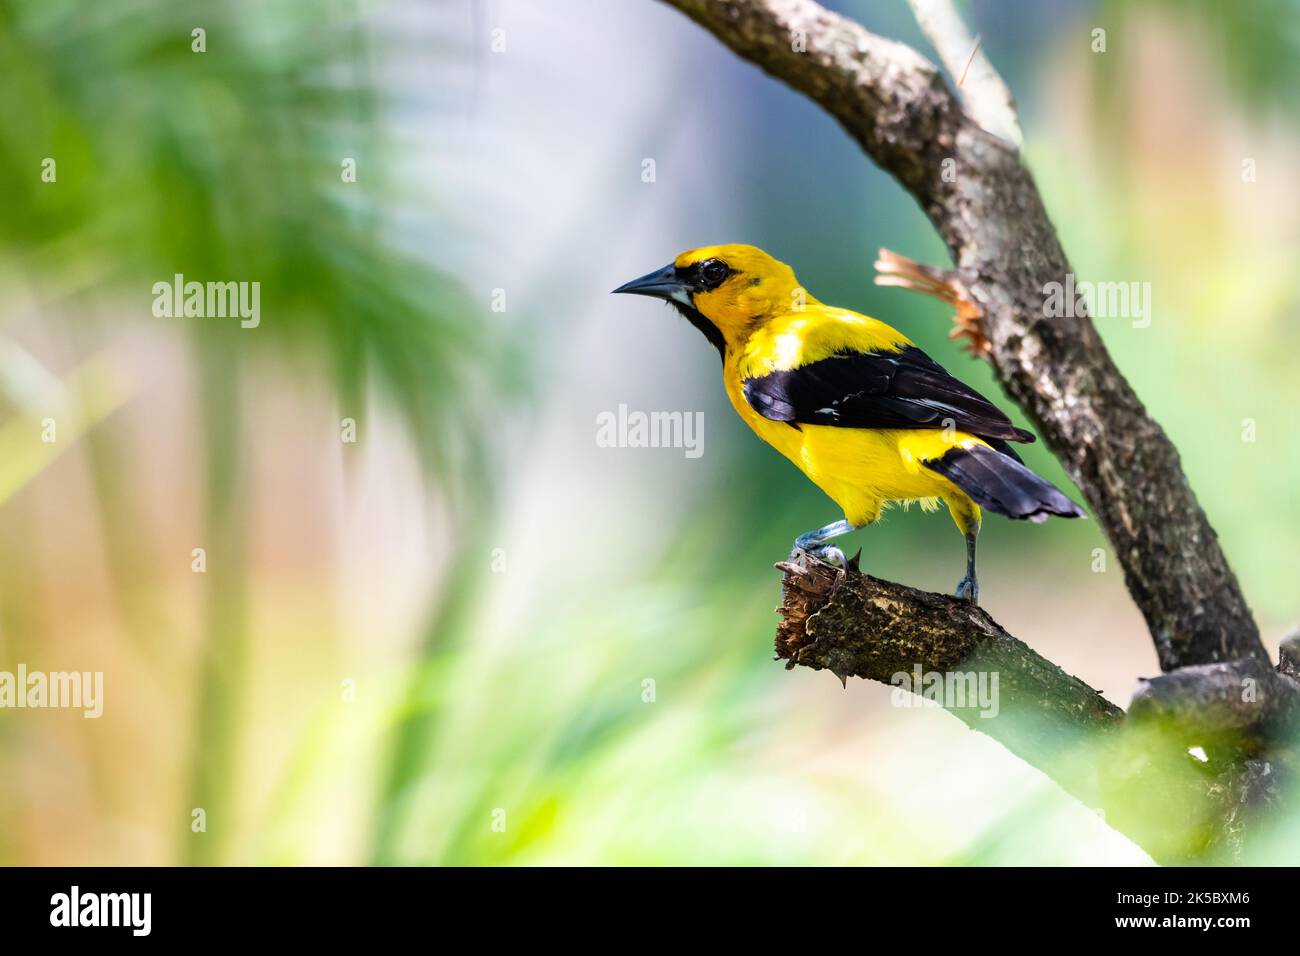 Bellissimo uccello tropicale, Oriole giallo, appollaiato all'ombra di un albero in un giardino. Foto Stock